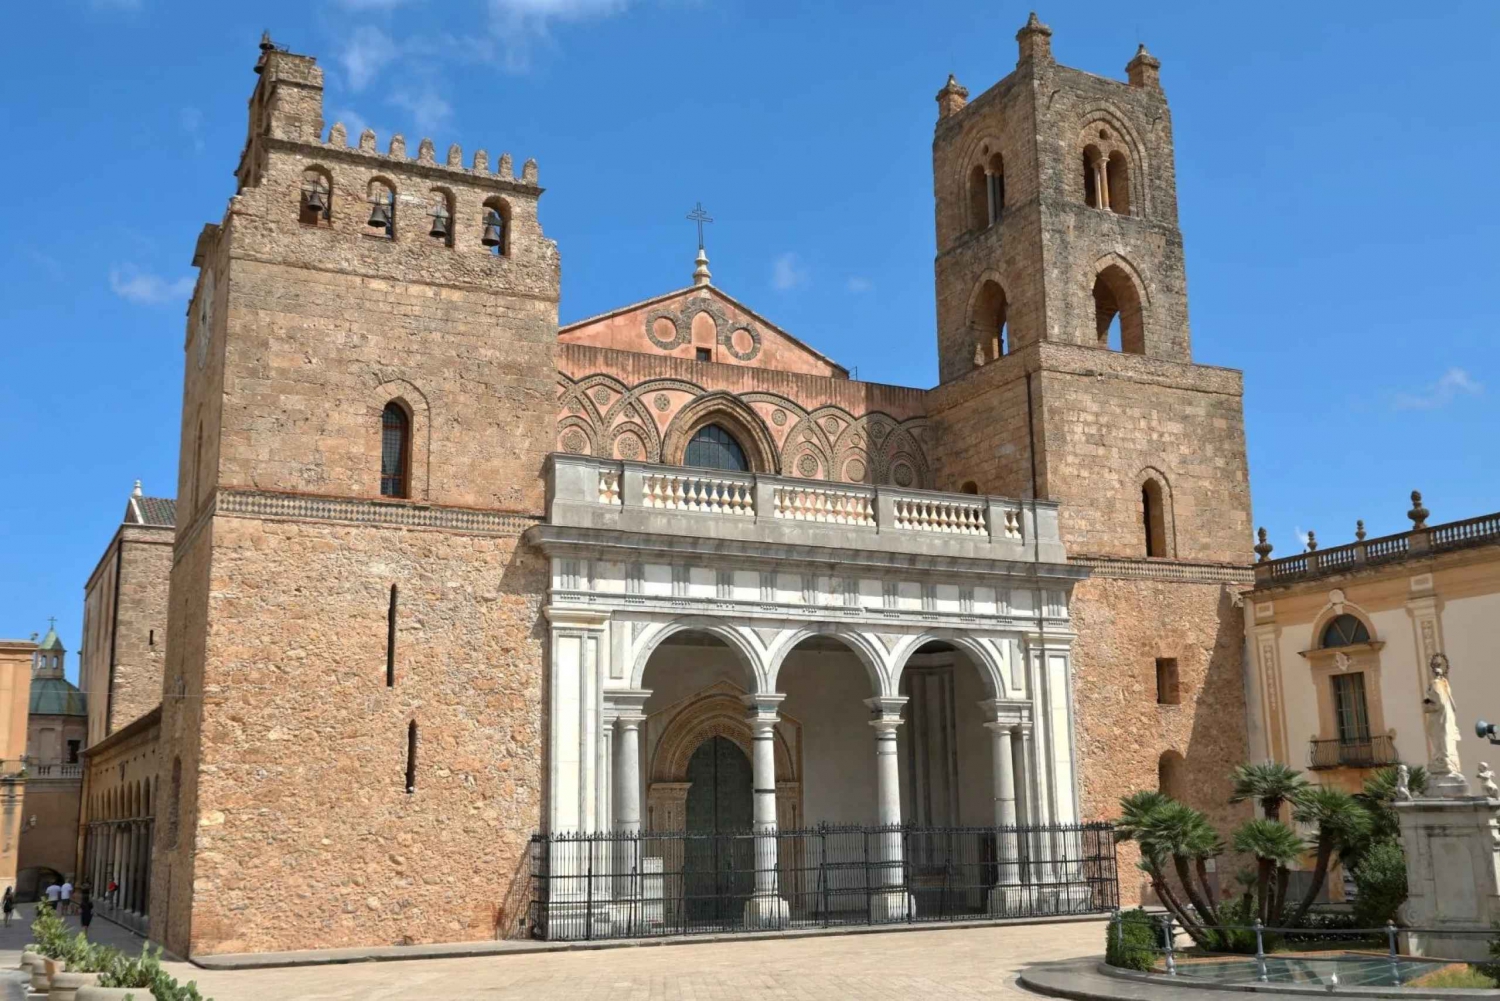 Palermo: Monreale, Katakomben und S. Giovanni degli Eremiti